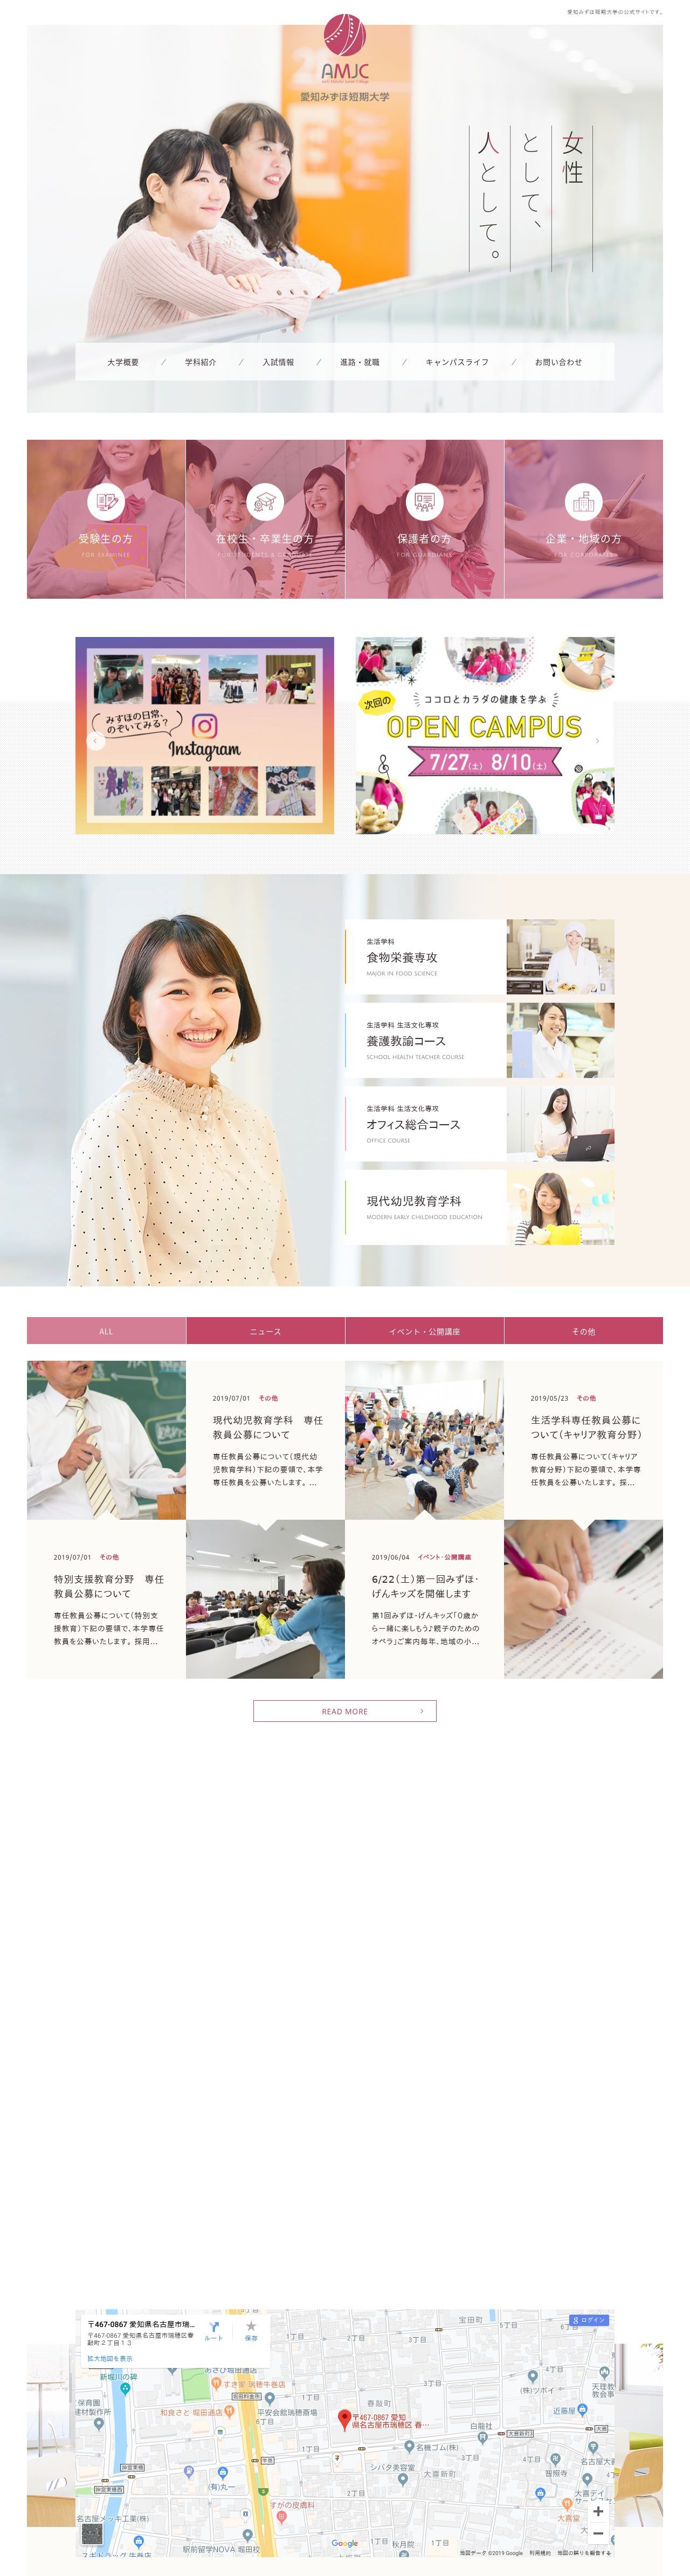 愛知みずほ短期大学 Web制作 ホームページ制作実績 Web幹事